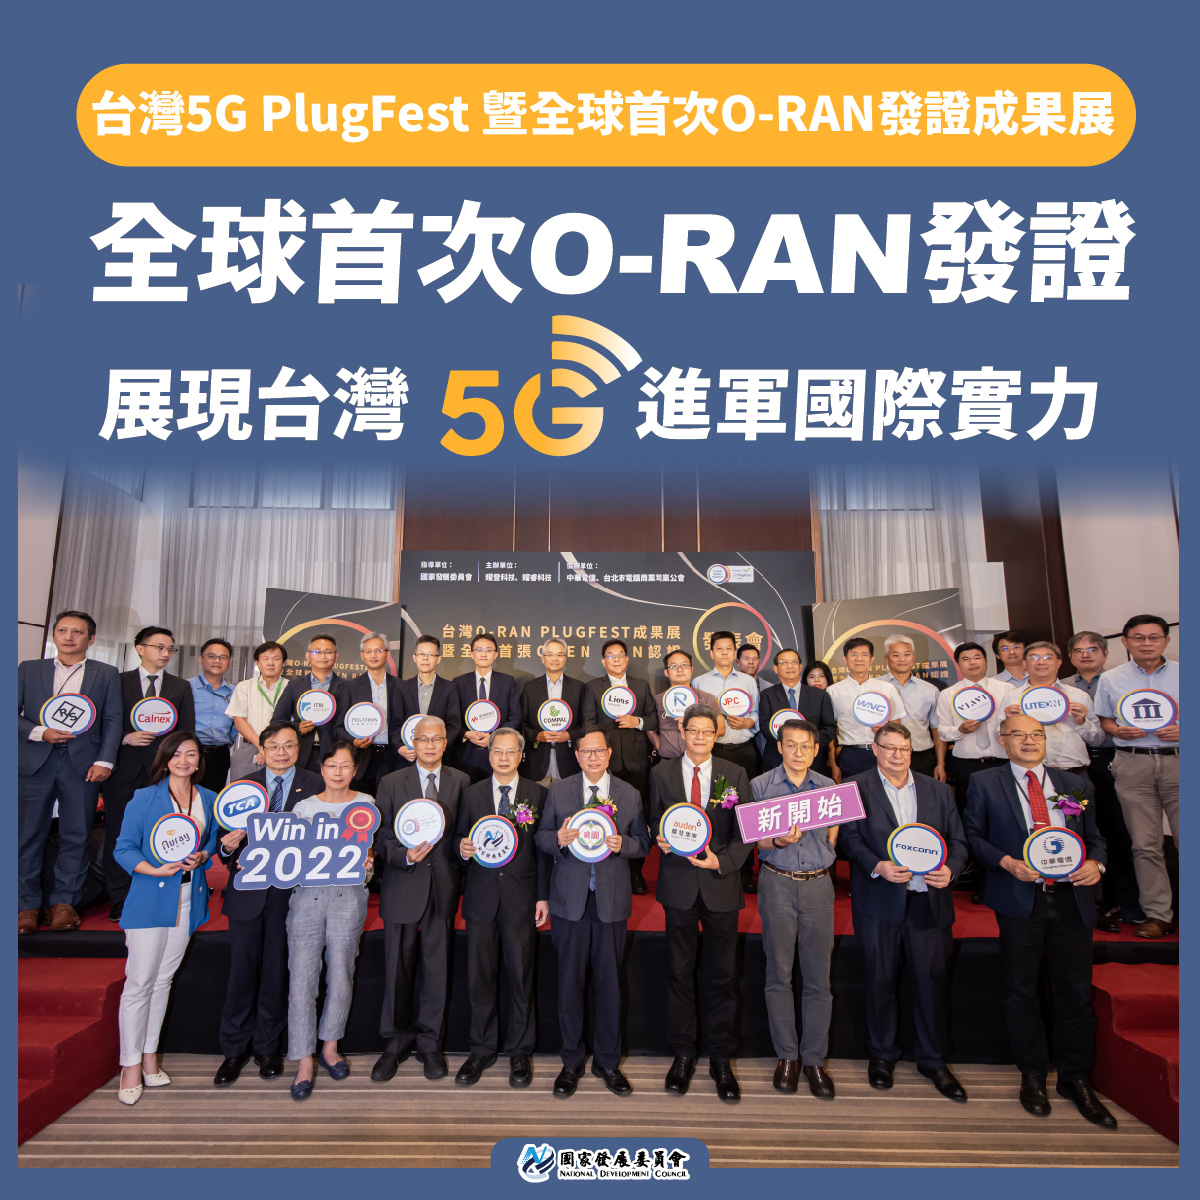 全球首次O-RAN發證 展現台灣5G進軍國際實力圖卡